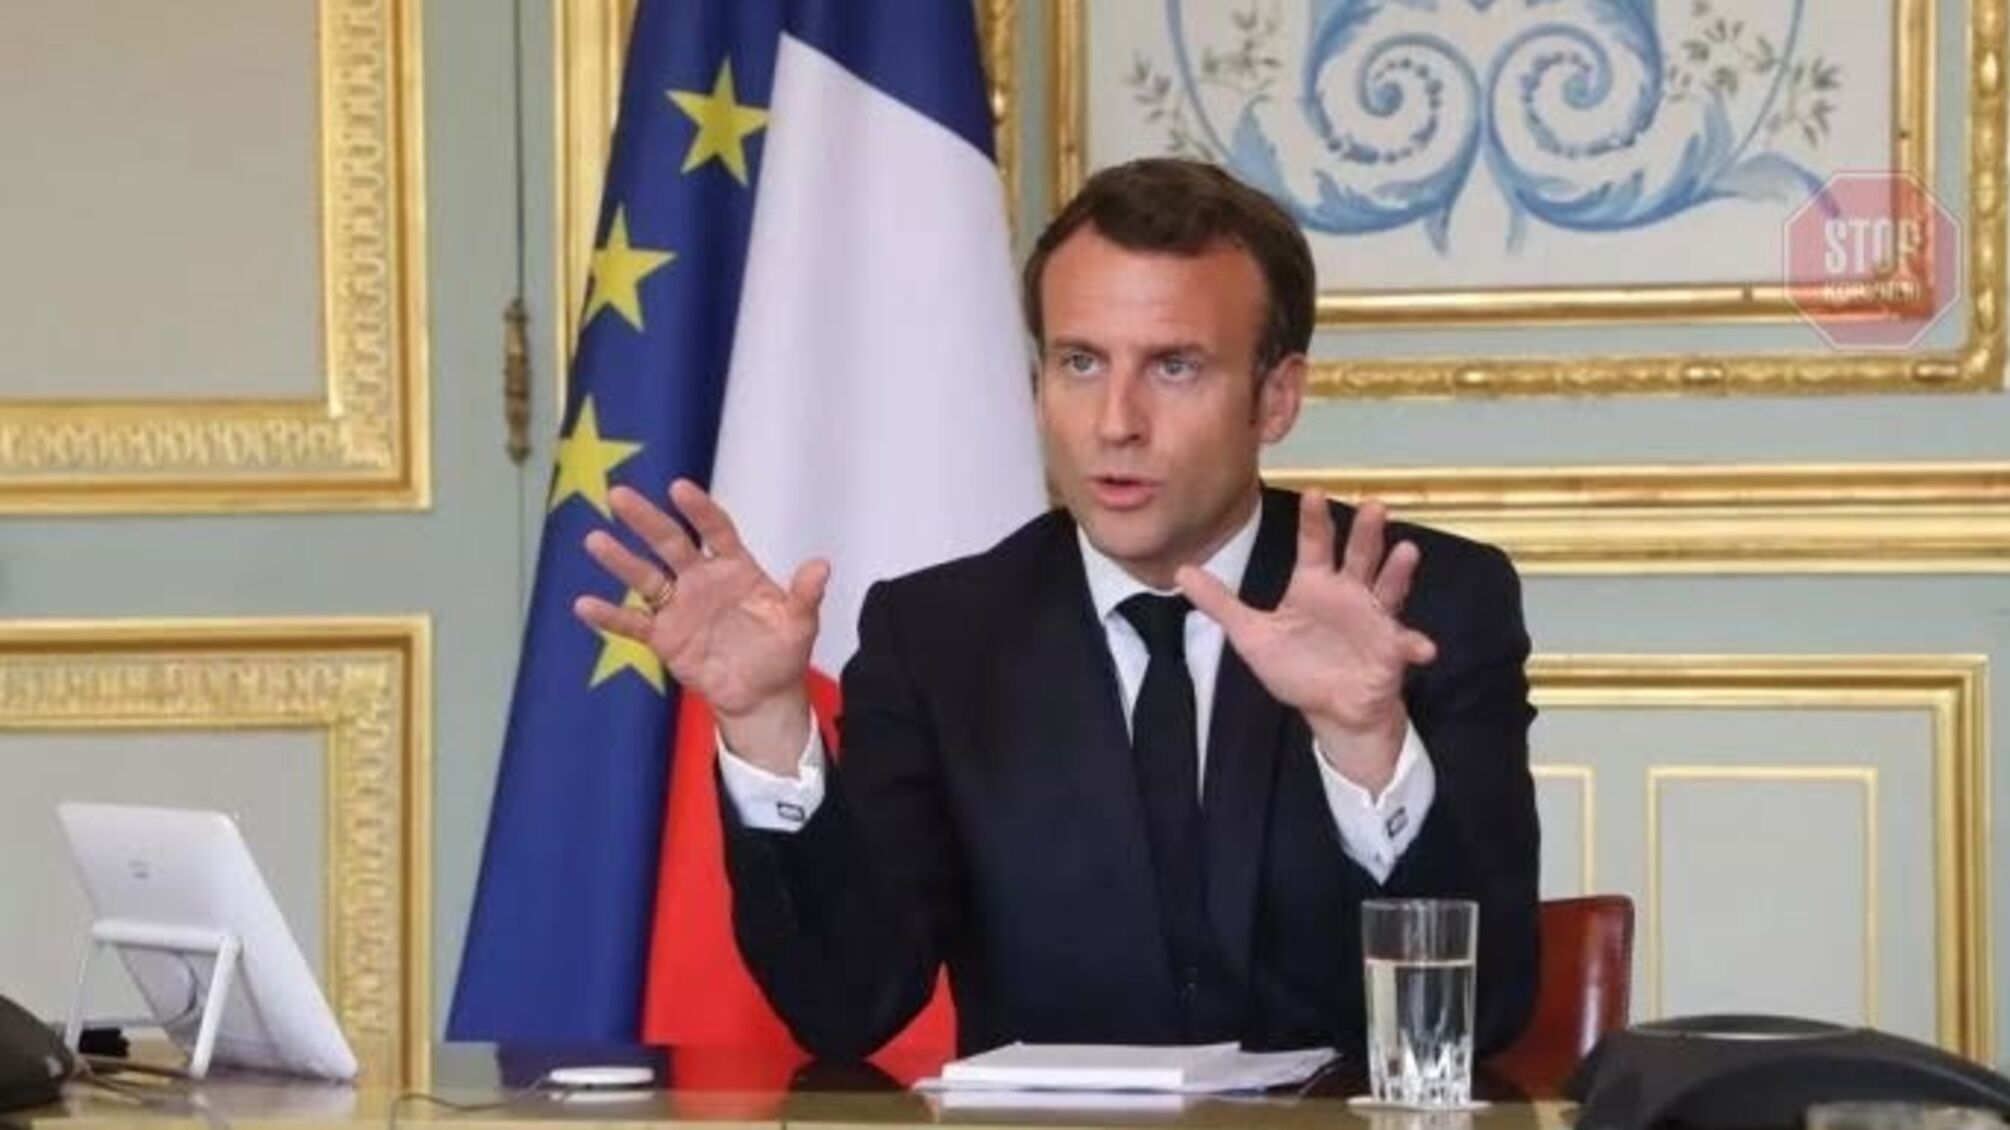  'Неможливо зупинити країну' на карантин повторно, — президент Франції Макрон